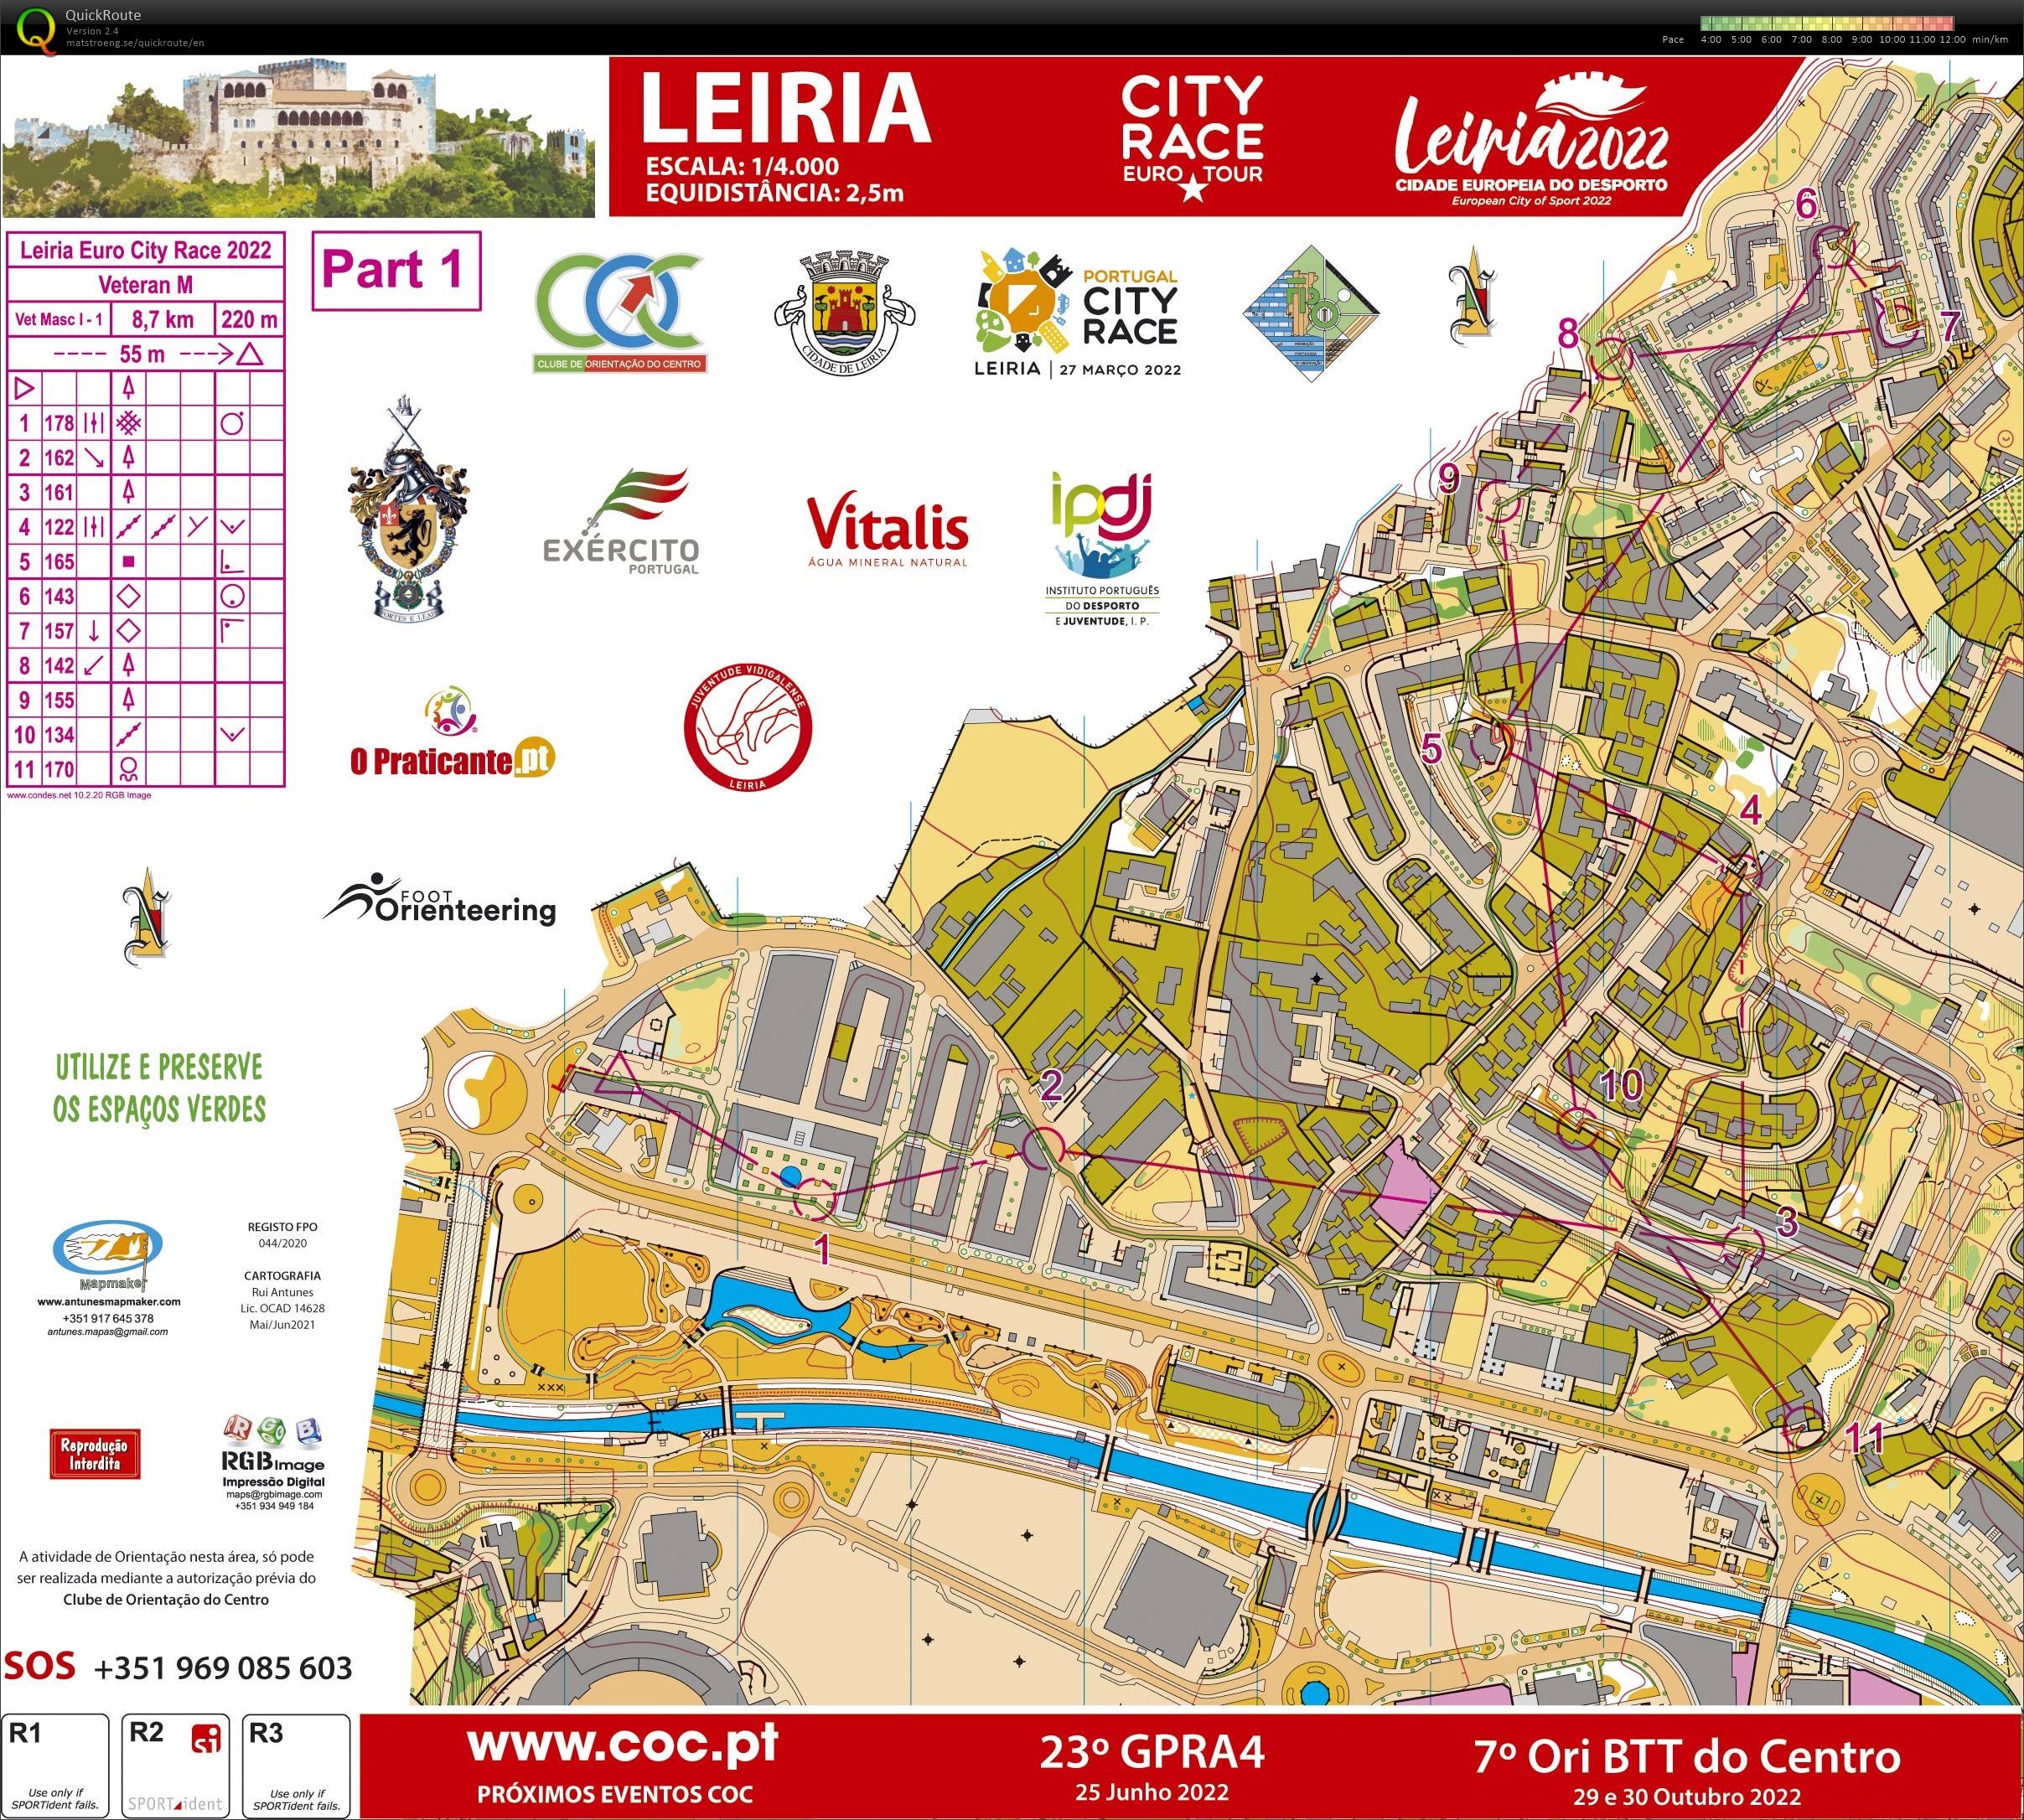 Leiria City Race Euro Tour 2022 (Part1) (27.03.2022)